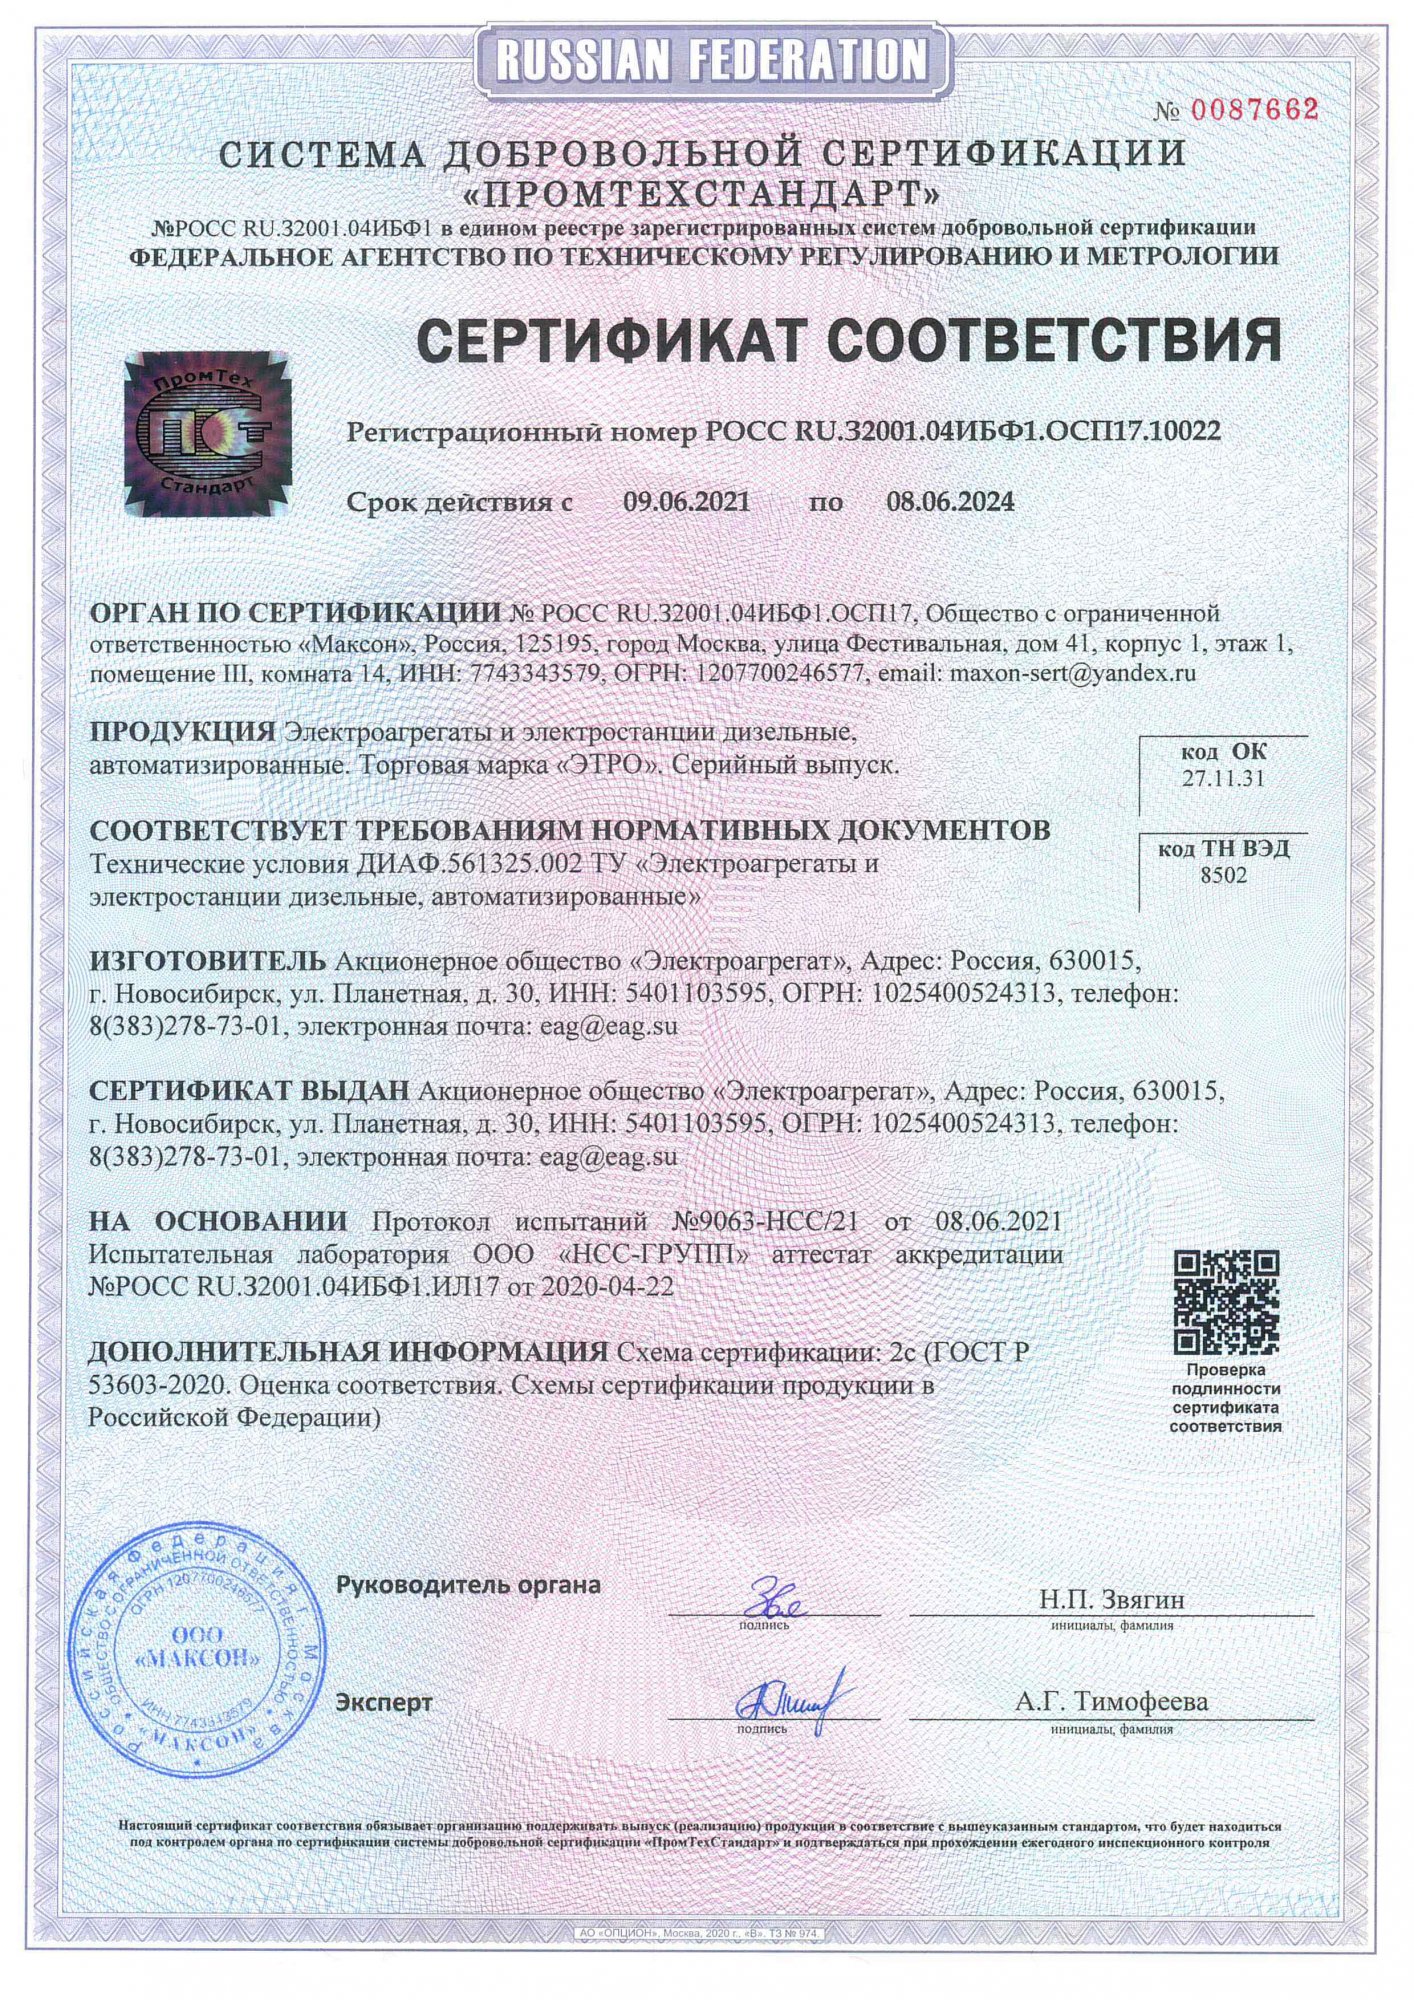 Сертификат соответствия ДИАФ.561325.002 Электроагрегаты и электростанции дизельные автоматизированные